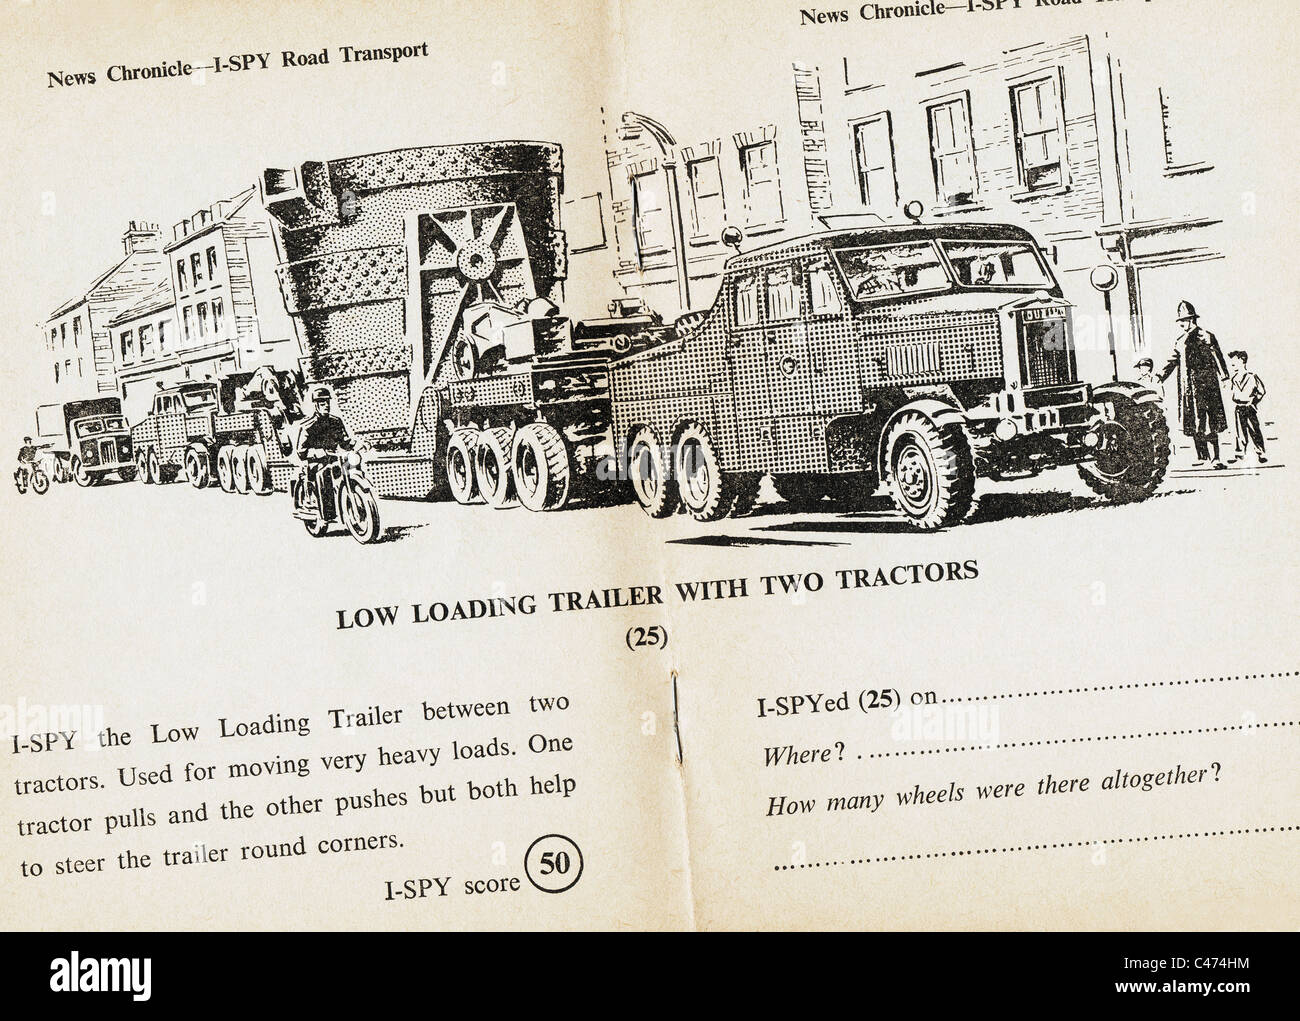 Pages de I-Spy book du transport routier publié par le Daily News en 1960 Banque D'Images